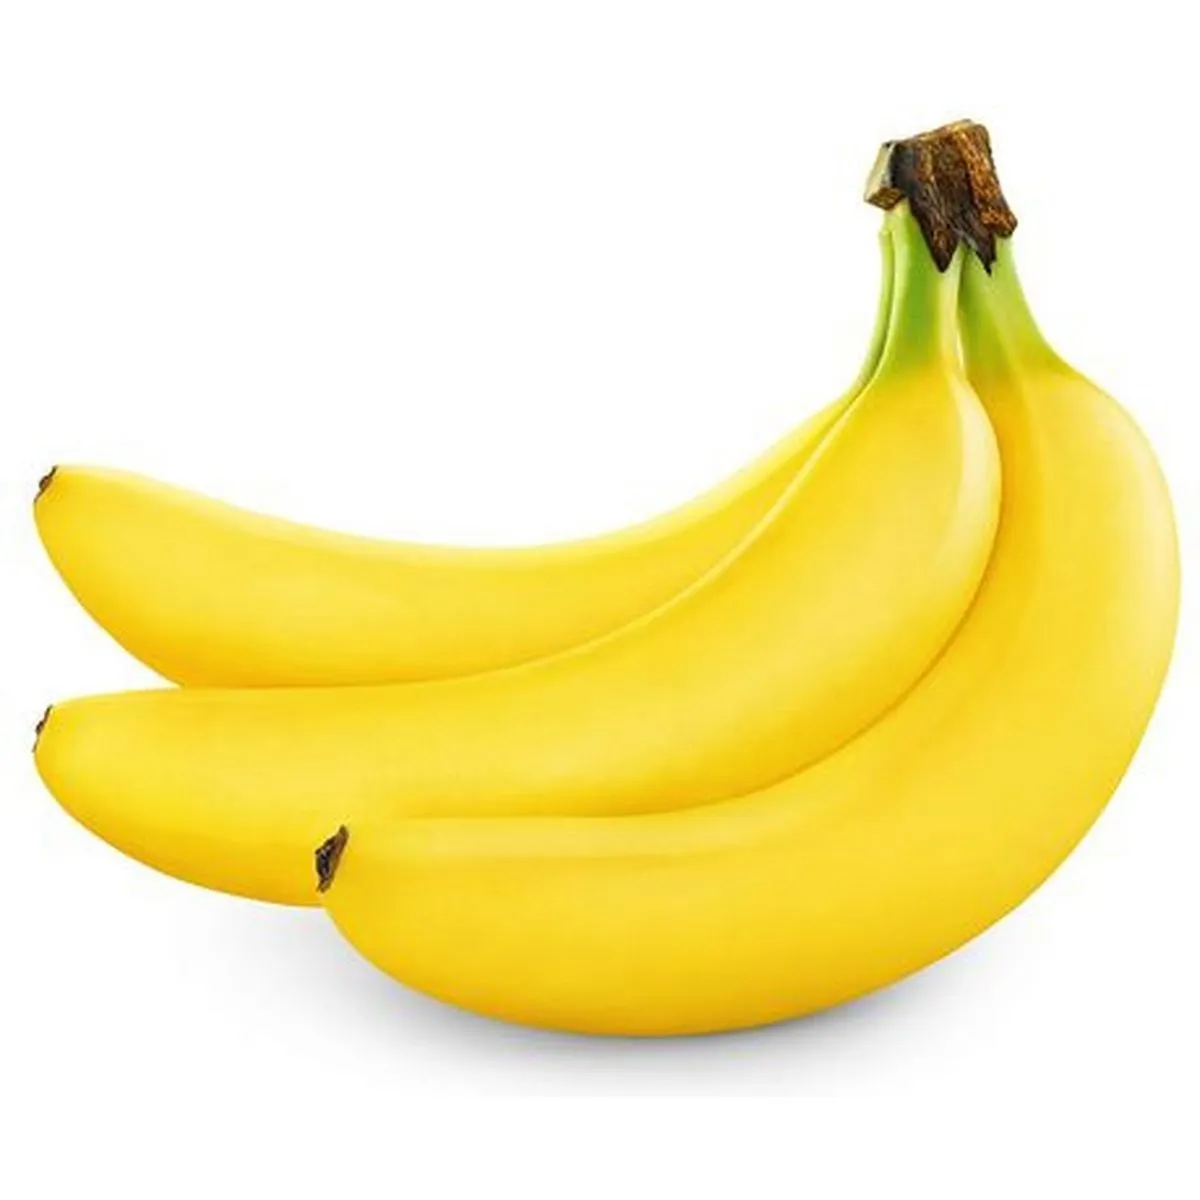 bananes bio